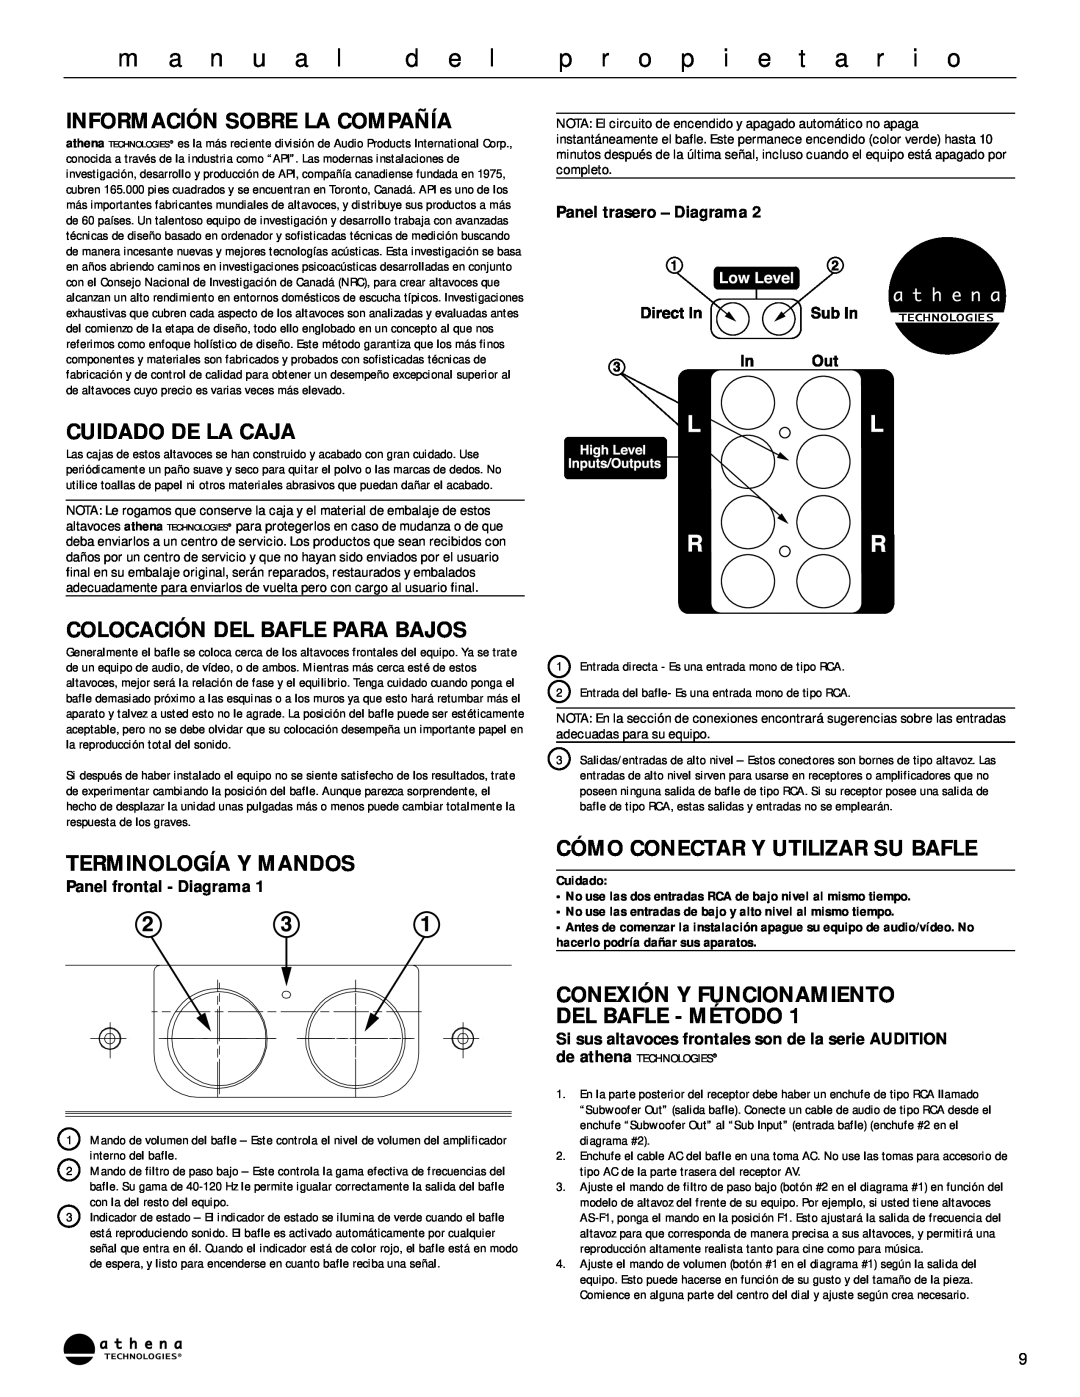 Athena Technologies AS-P300 Información Sobre La Compañía, Cuidado De La Caja, Colocación Del Bafle Para Bajos, d e l 